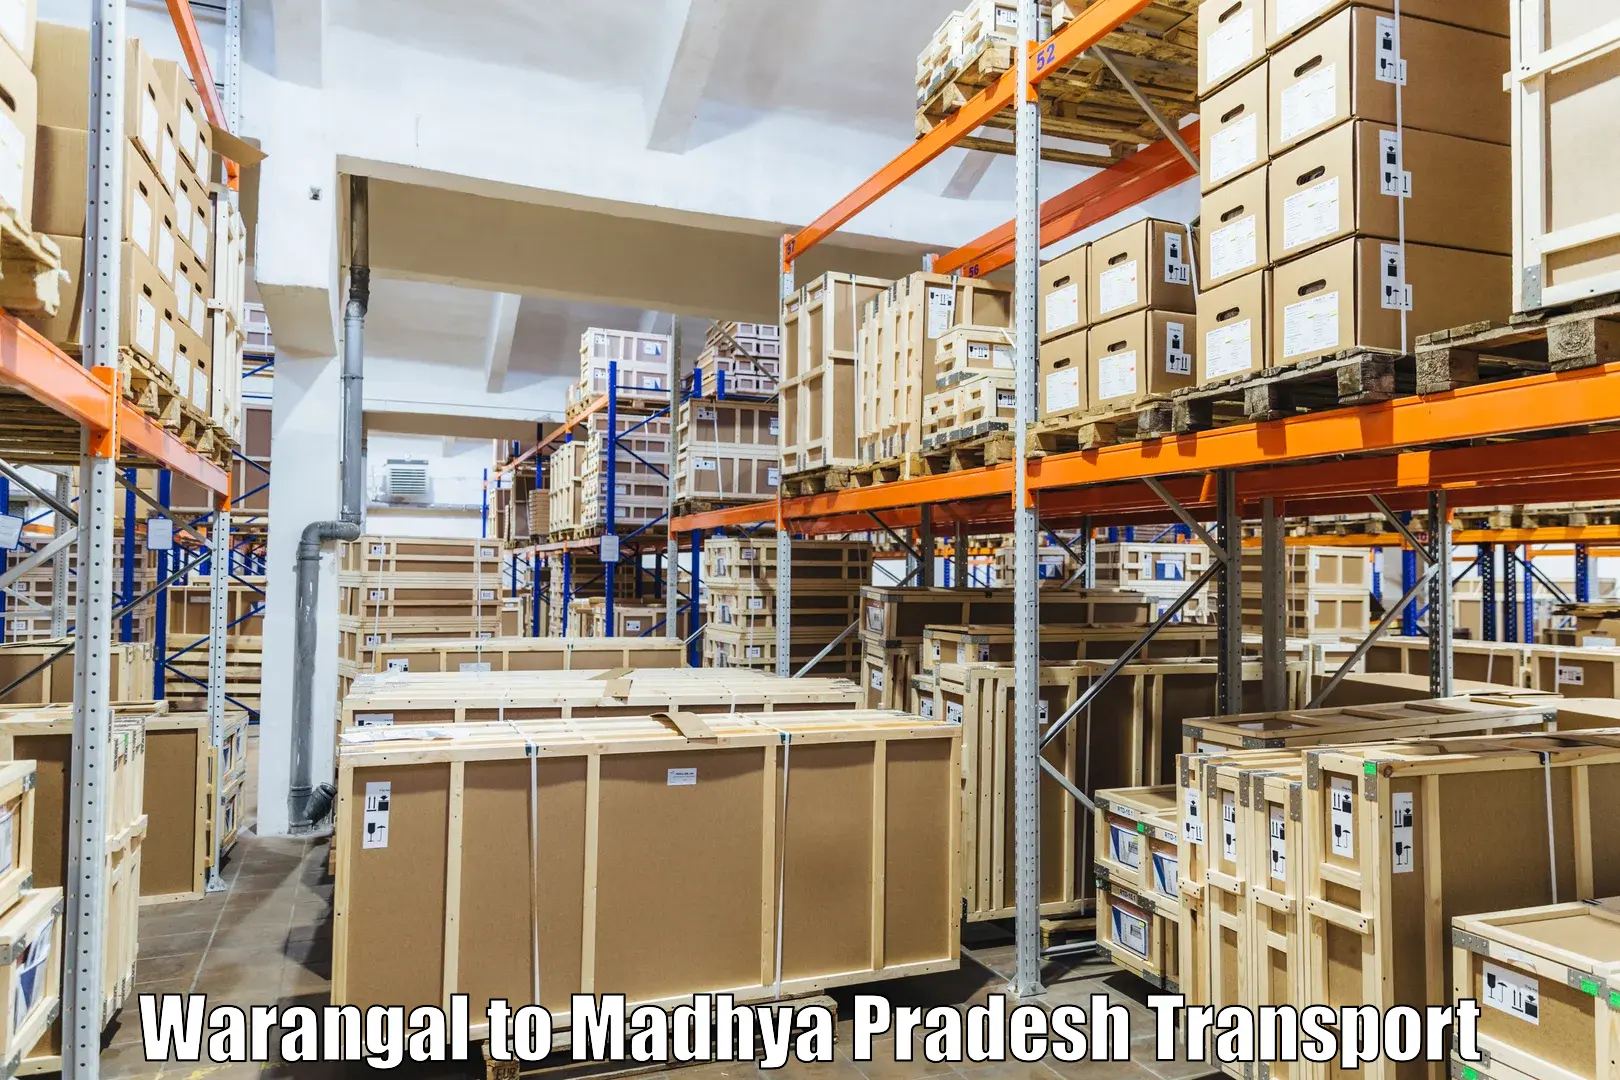 Daily transport service Warangal to Nainpur